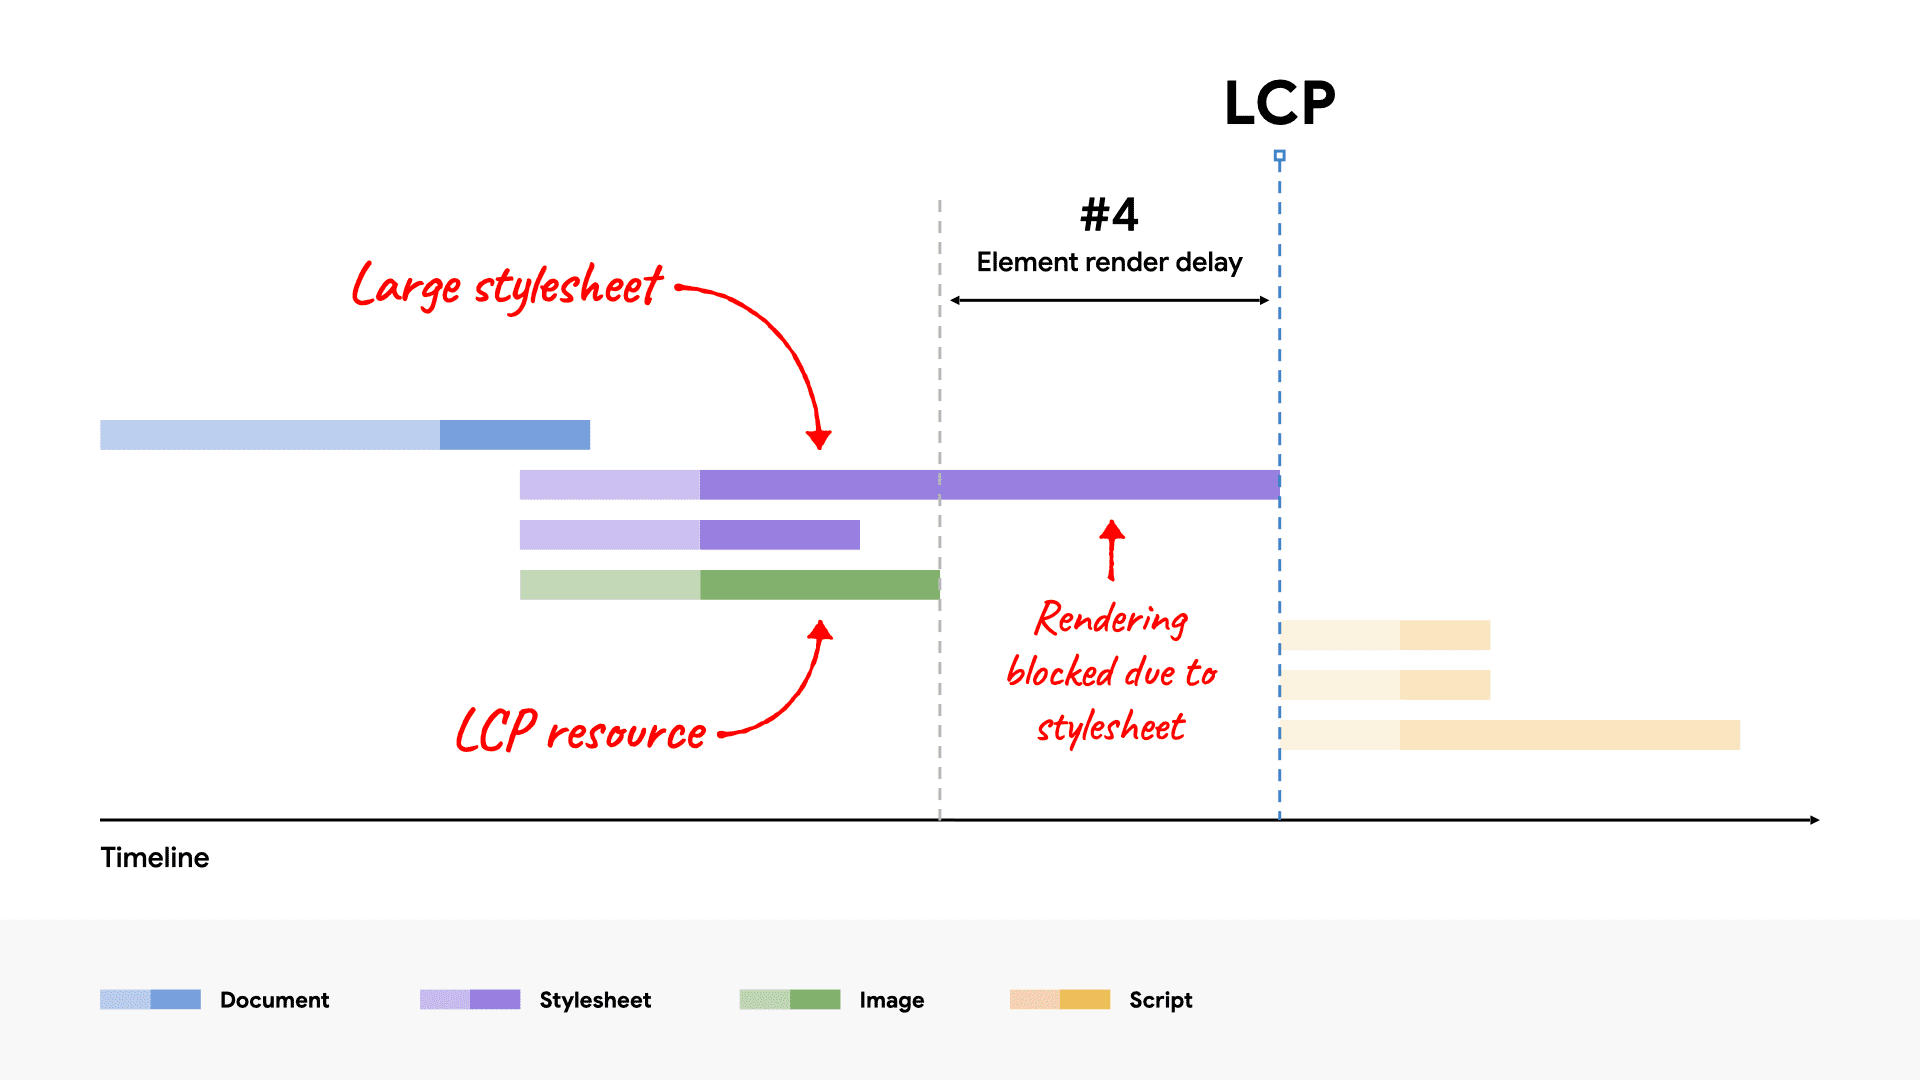 网络广告瀑布流示意图，显示了一个大型 CSS 文件因加载时间比 LCP 资源更长而阻止渲染 LCP 元素